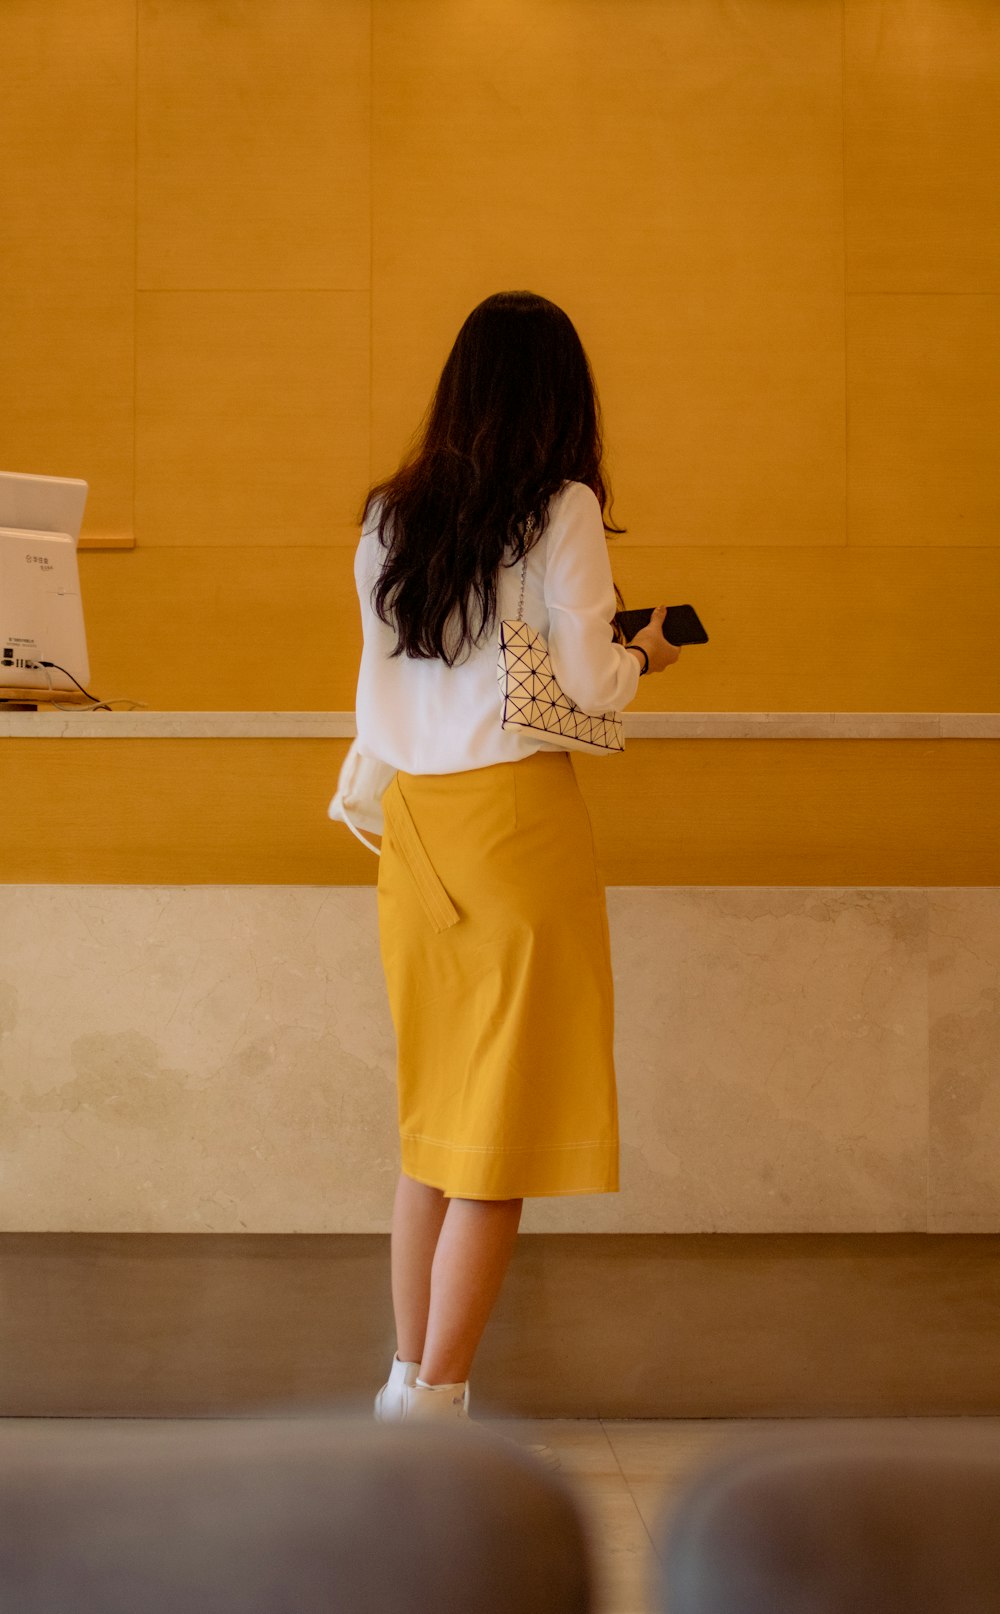 Mujer con camisa blanca de manga larga y falda amarilla